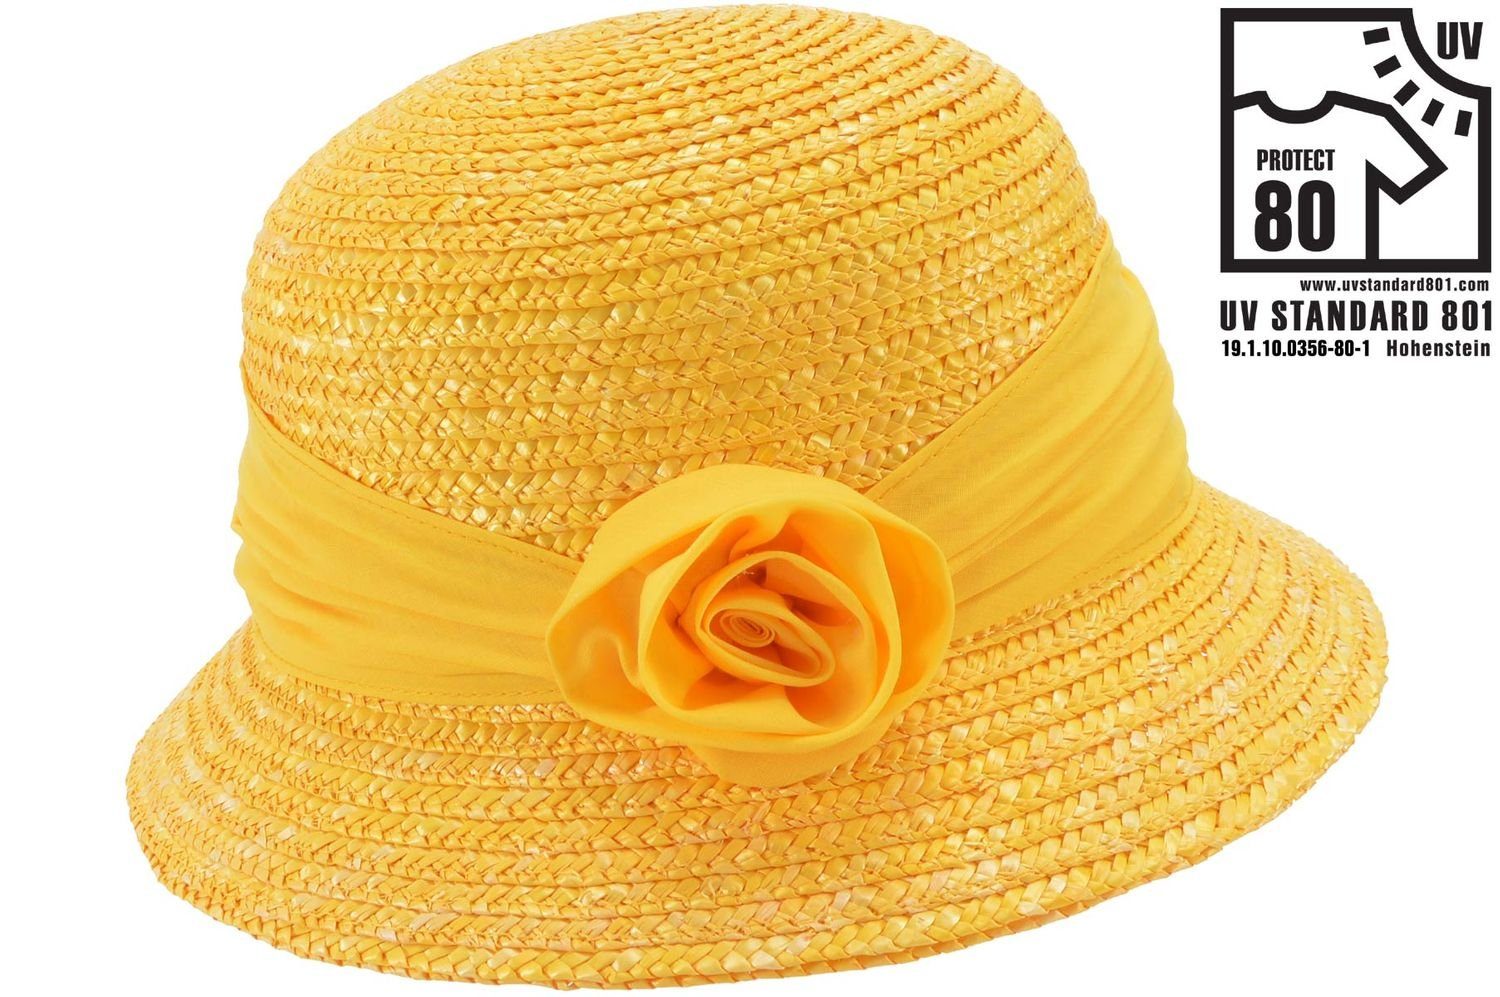 Seeberger Strohhut Elegante Glockenhut mit Blume & UV-Schutz 80 0043 honig | Strohhüte